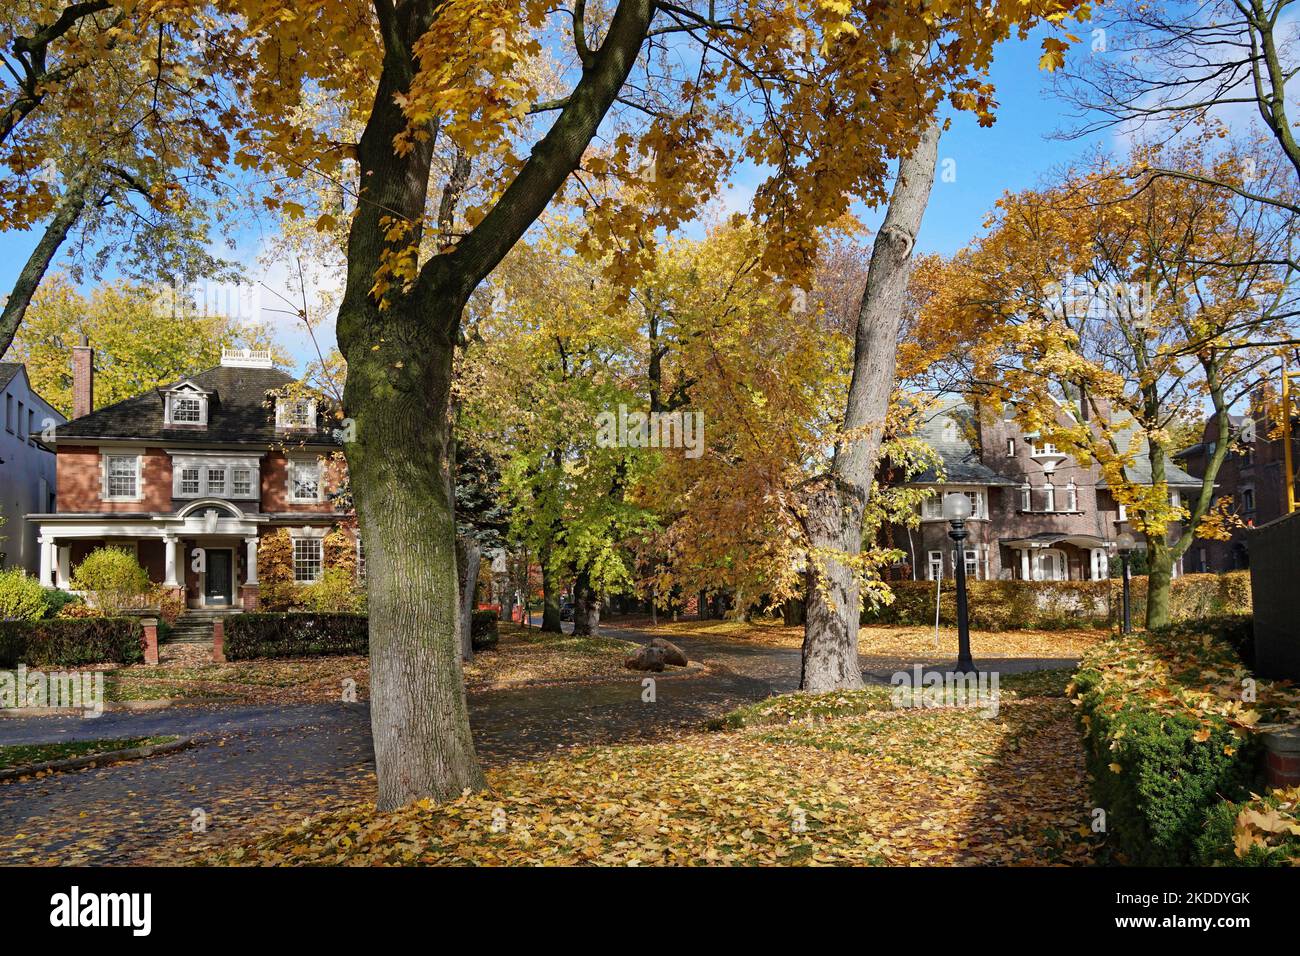 Giallo dorato colori autunnali su alberi d'acero in un quartiere residenziale antico Foto Stock